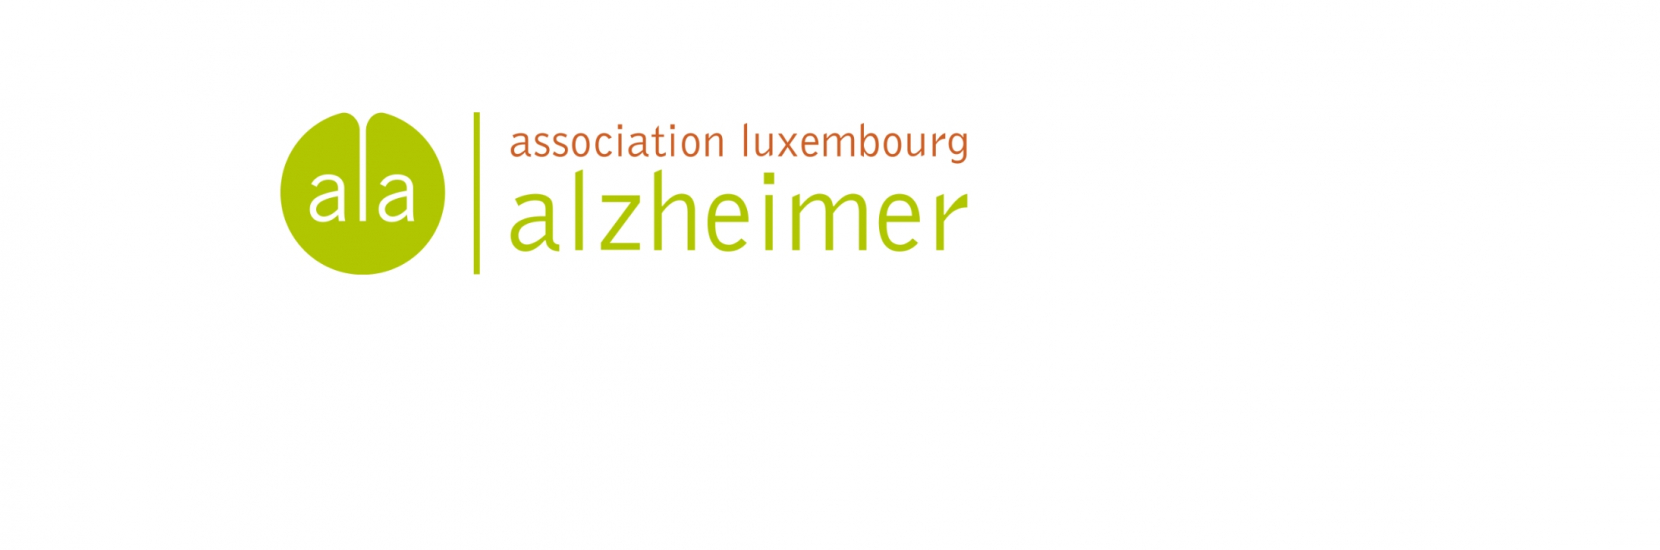 Association Luxembourg Alzheimer (ALA)